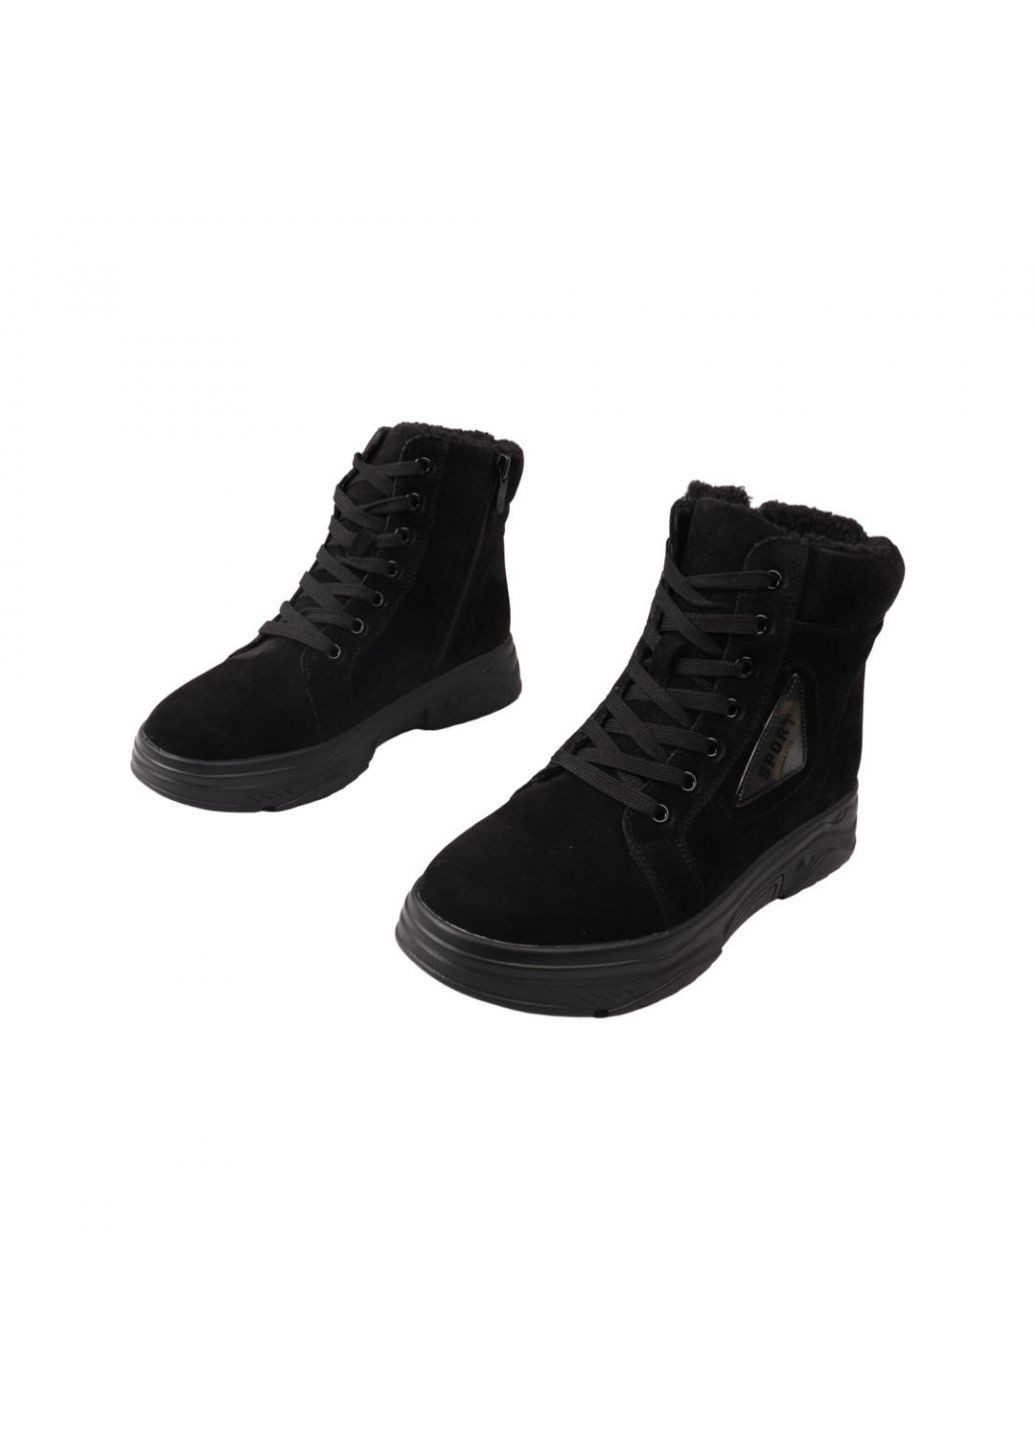 ботинки женские черные нубук Vikonty